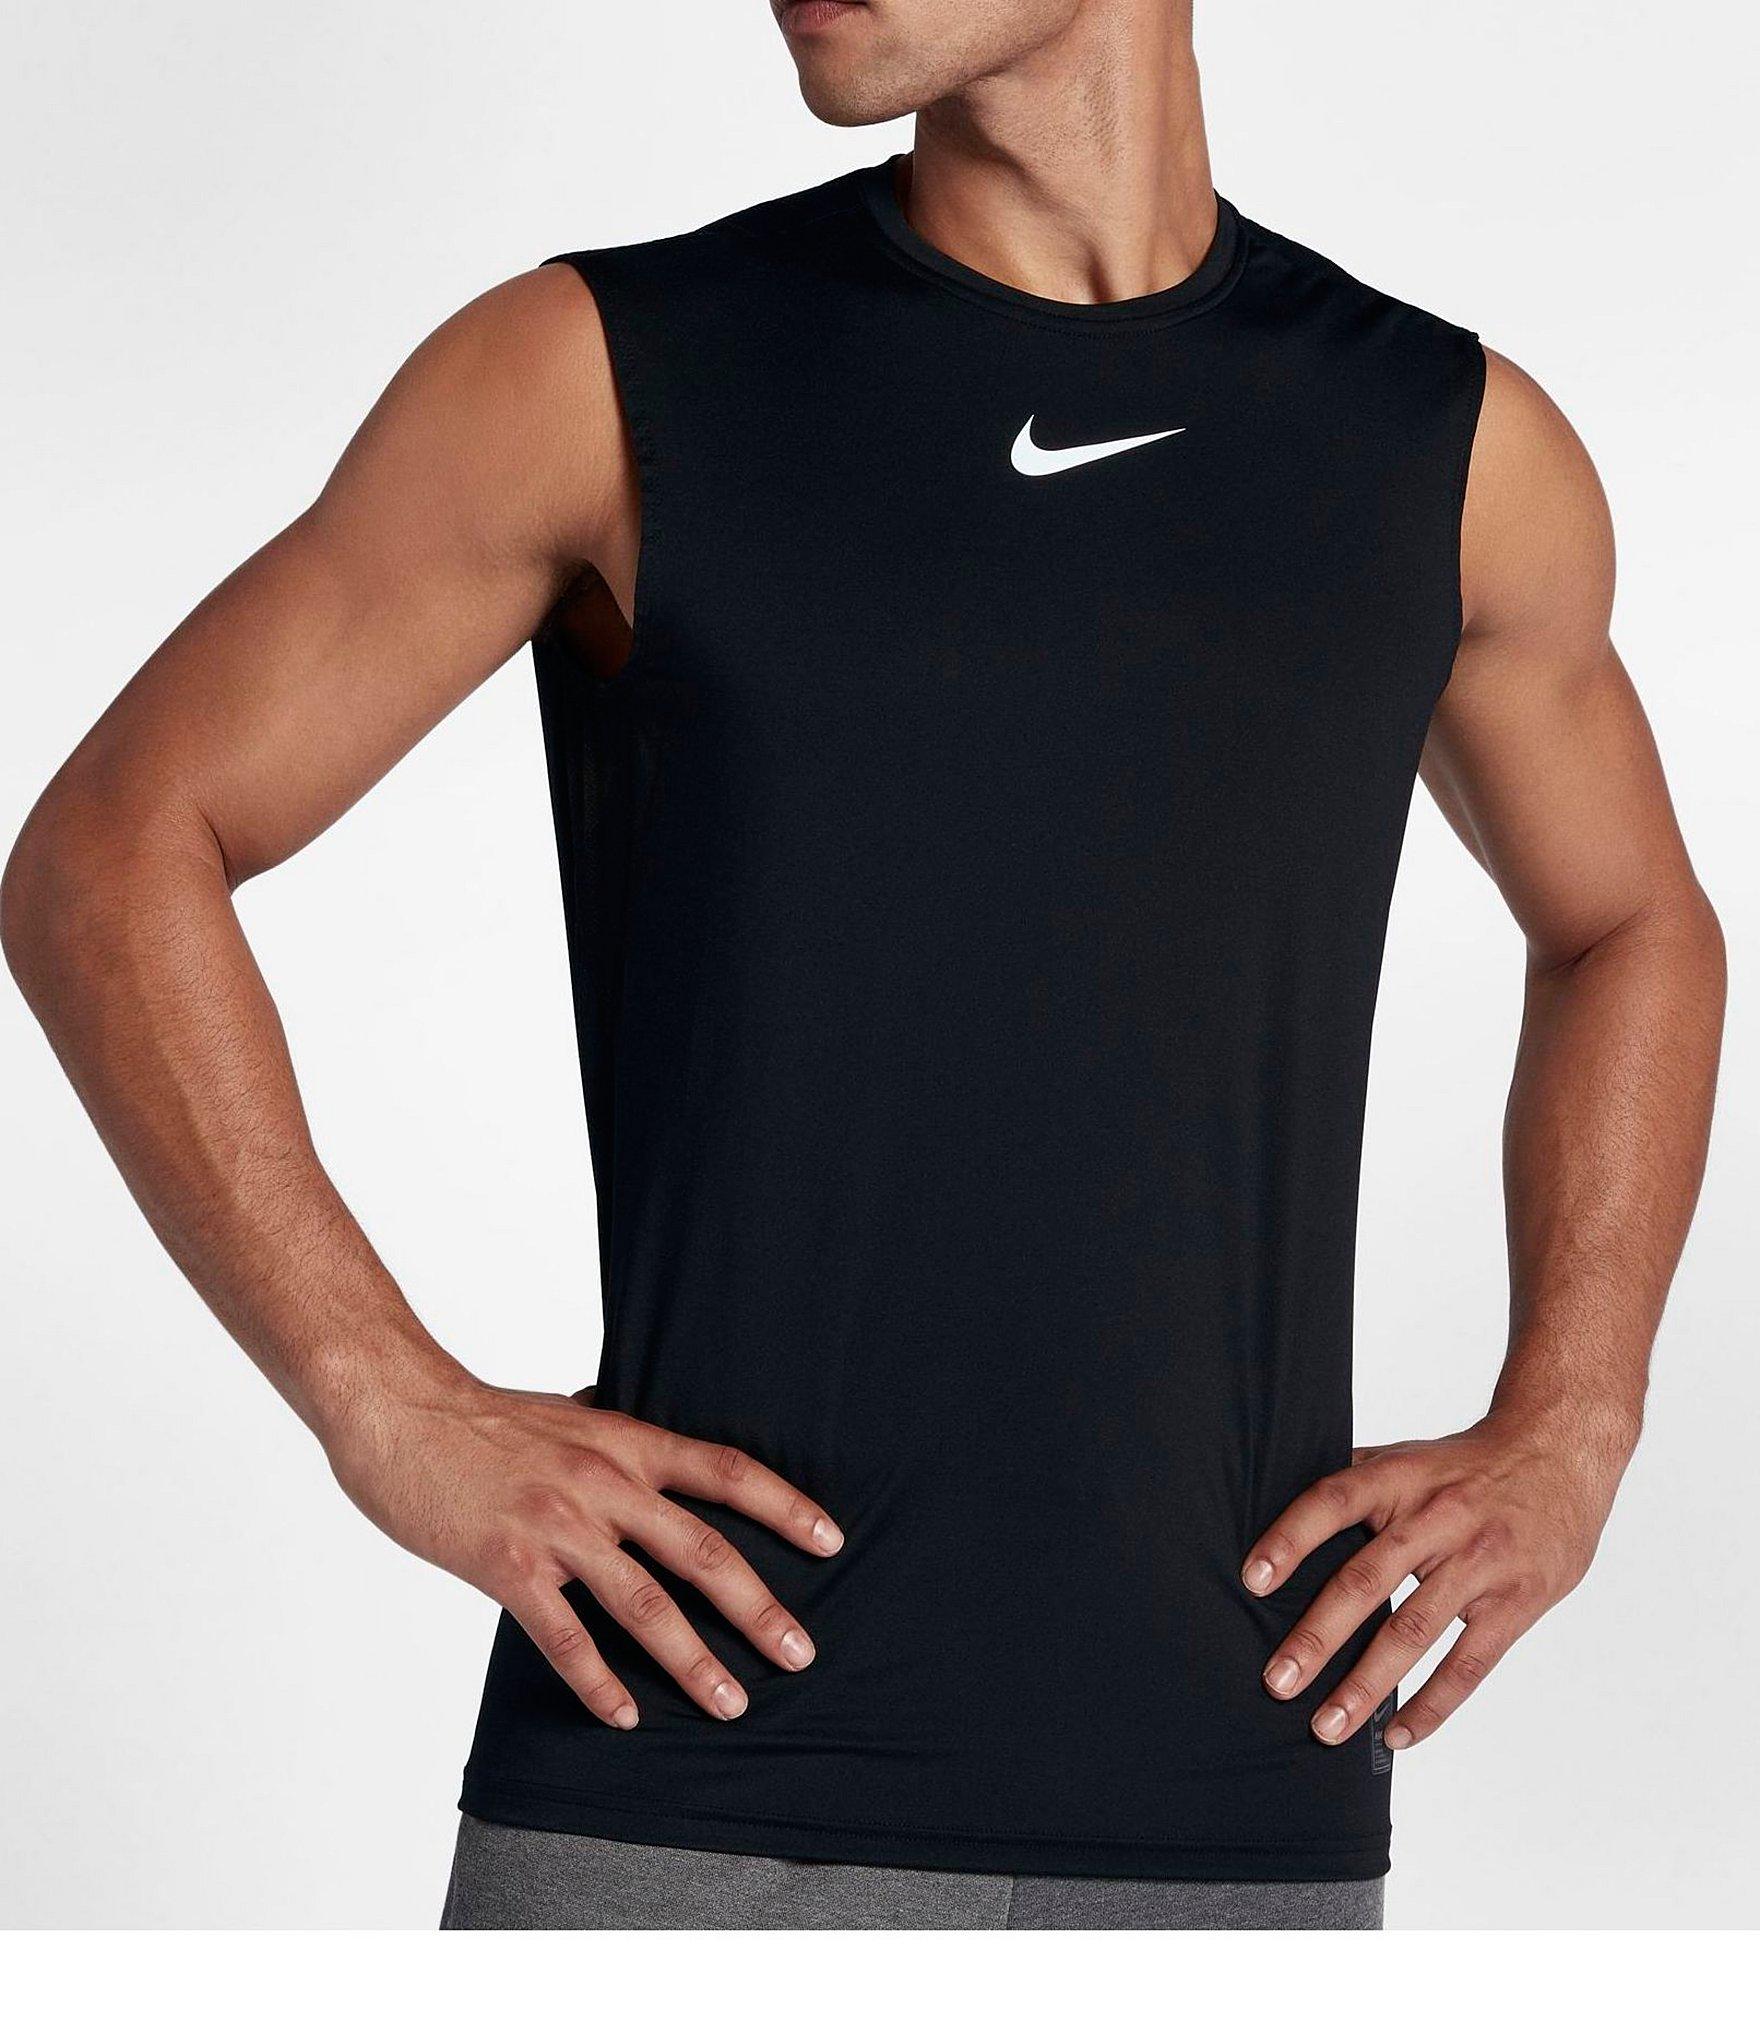 Nike Pro Muscle Tank in Black for Men - Lyst